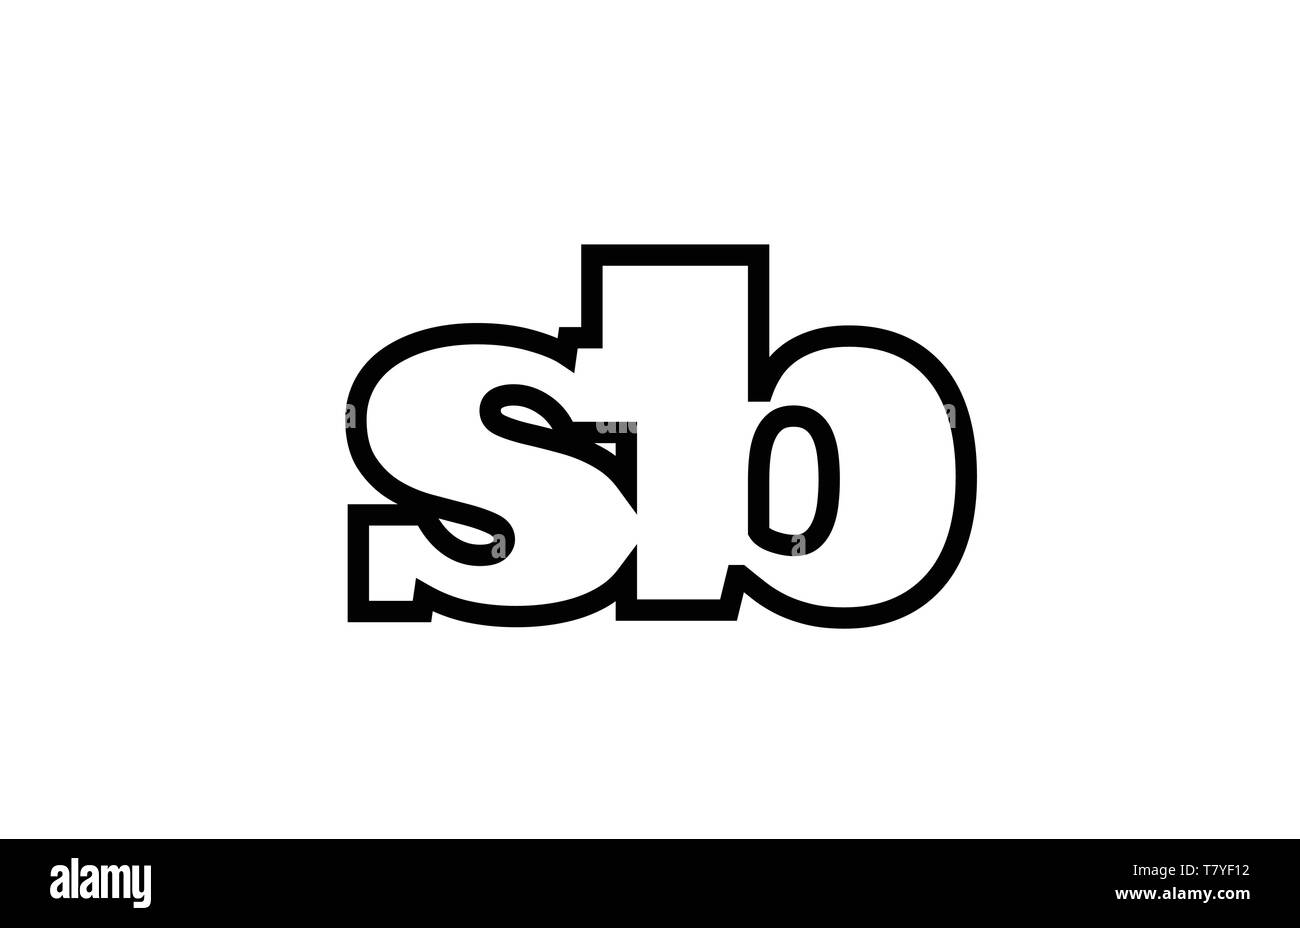 Angeschlossen oder Verbunden sb s b schwarze Buchstaben Kombination als Logo Icon Design für eine Firma oder Geschäft Stock Vektor